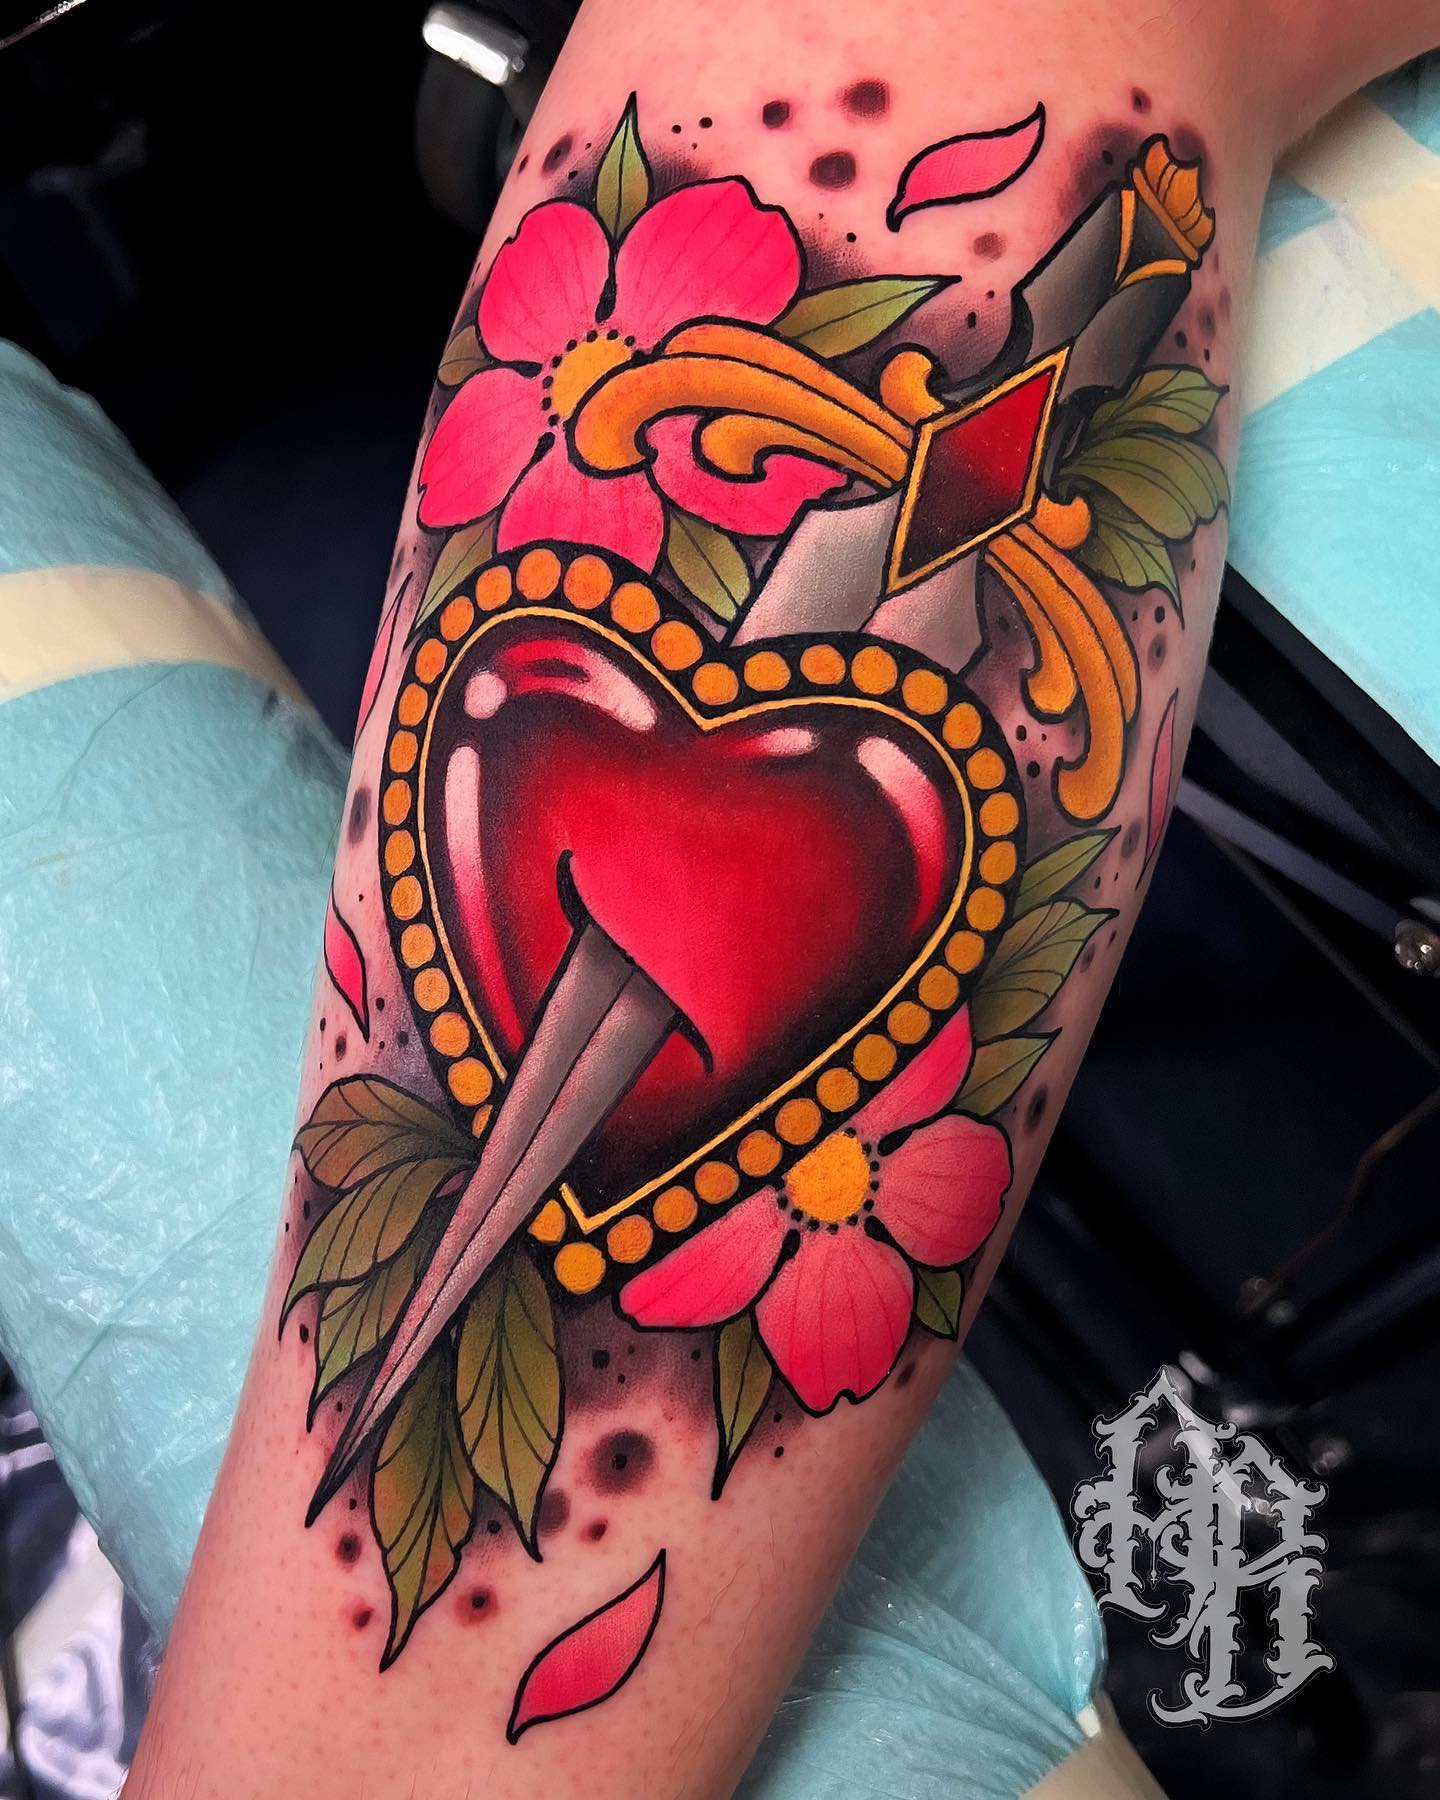 Heart and dagger tattoo design 1227566 Vector Art at Vecteezy